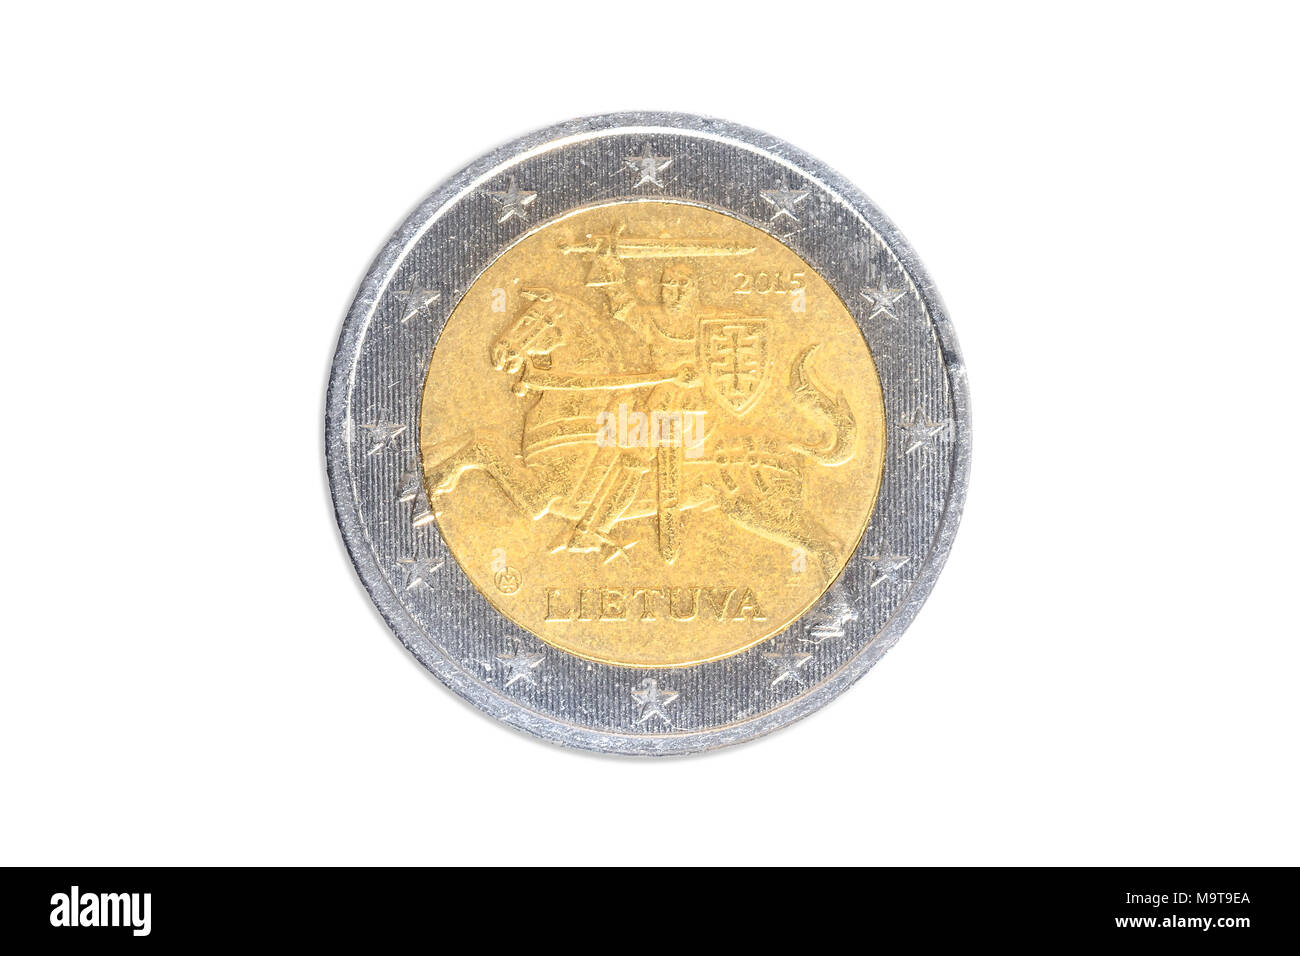 El lituano moneda de dos euros de cerca con Lietuva jinete símbolo de Lituania. Antecedentes de estudio aislado en blanco. Lado de la cabeza. Foto de stock